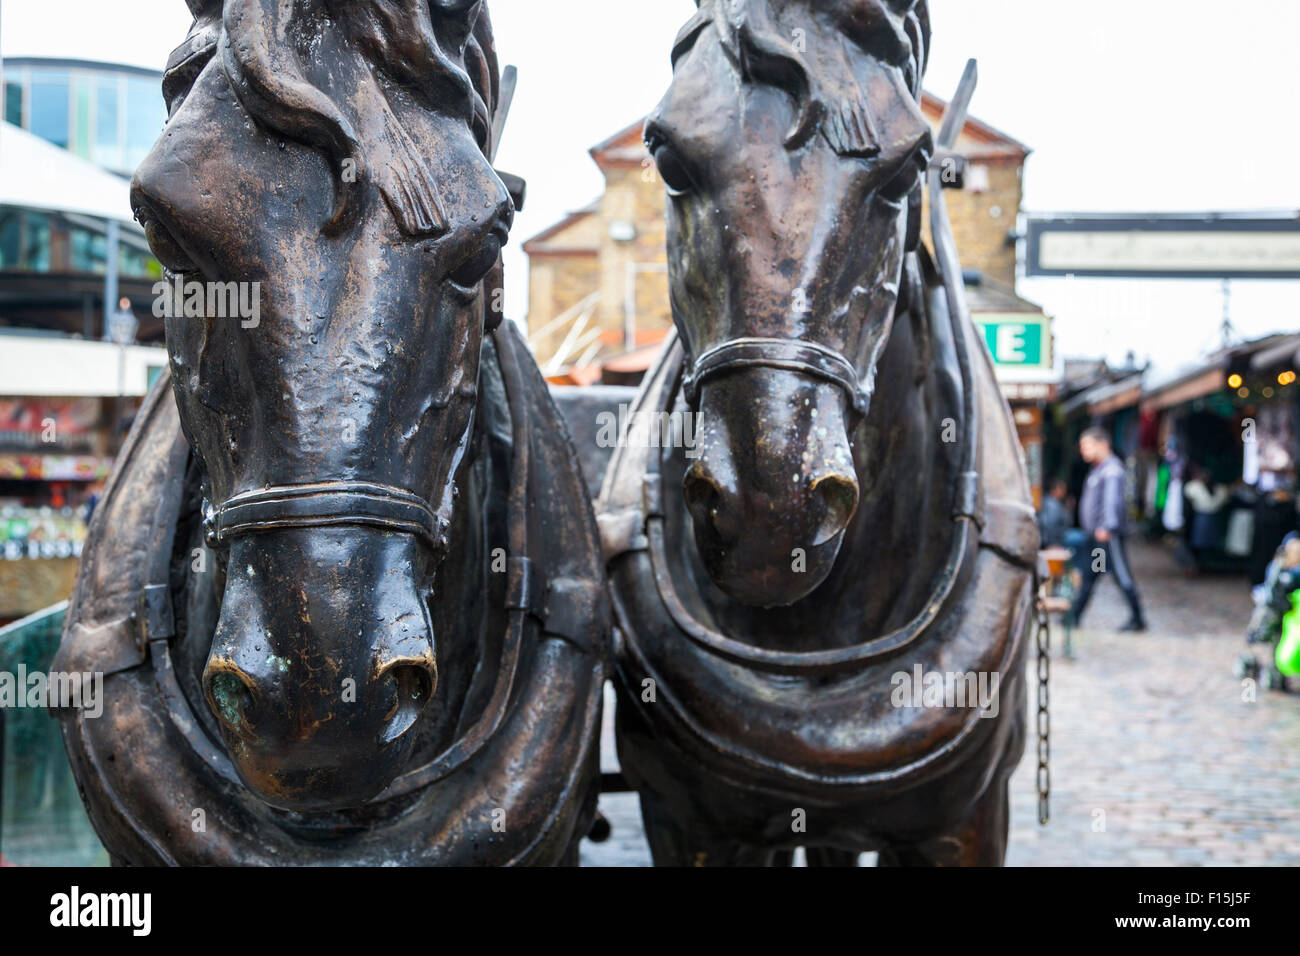 Pferd-Skulpturen in Camden Stables Market, London, UK Stockfoto